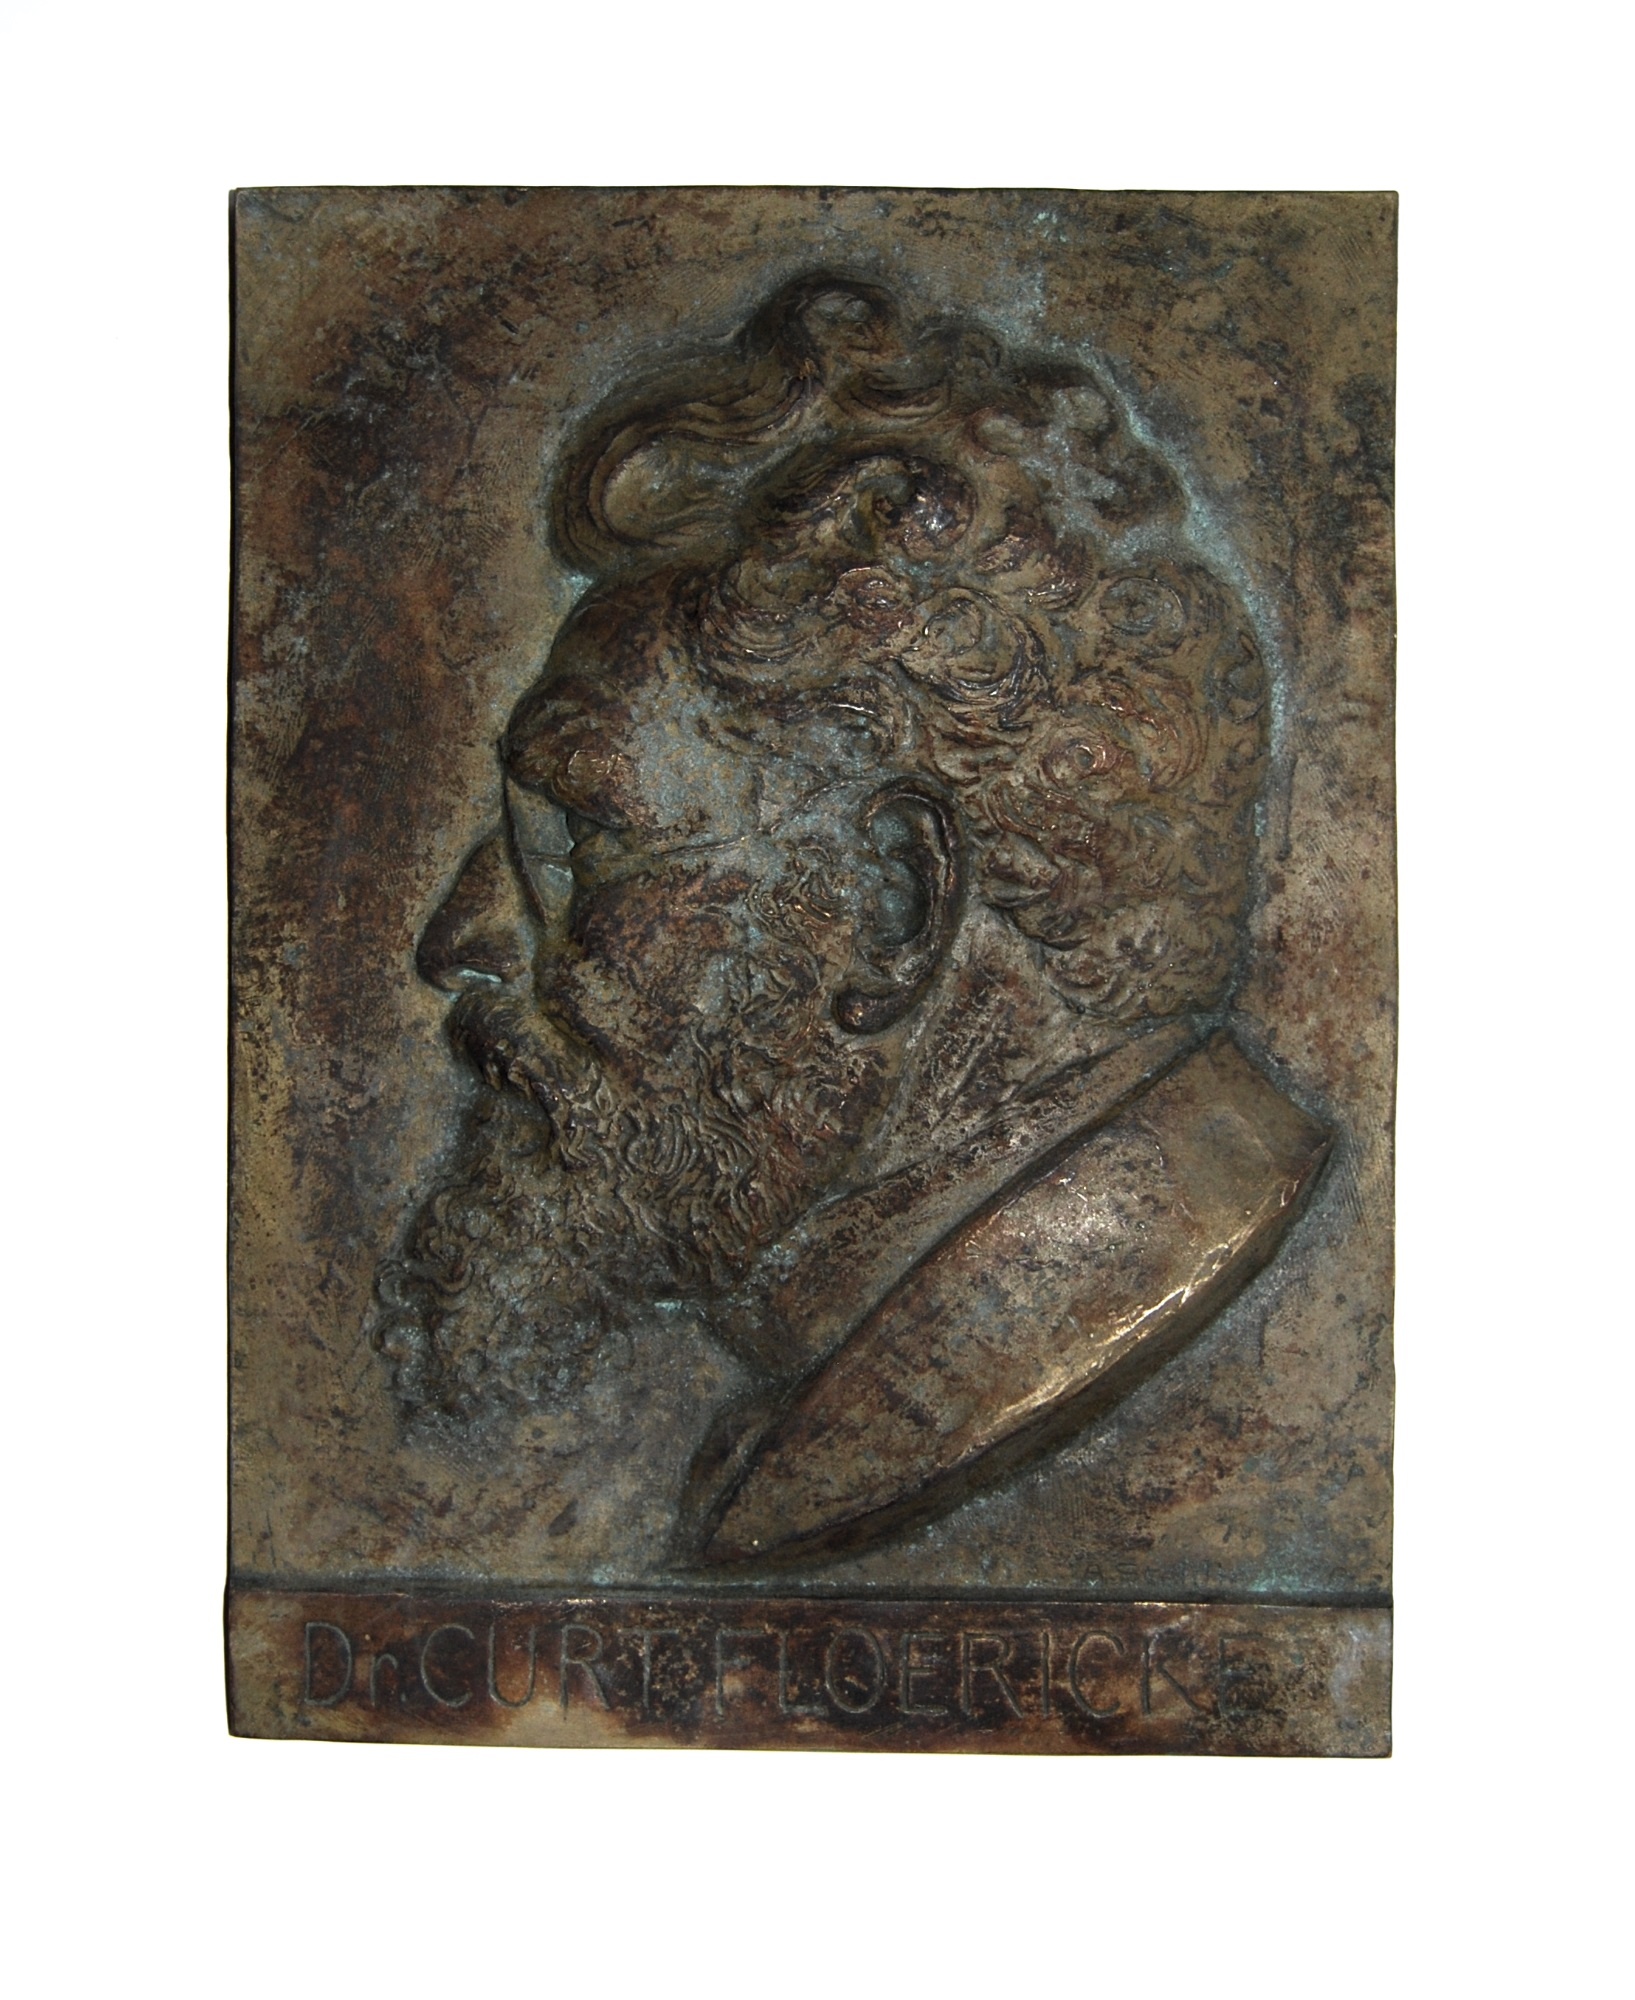 Bronzetafel mit dem Porträt von Dr. Curt Floericke (Museum Schloss Moritzburg Zeitz CC BY-NC-SA)